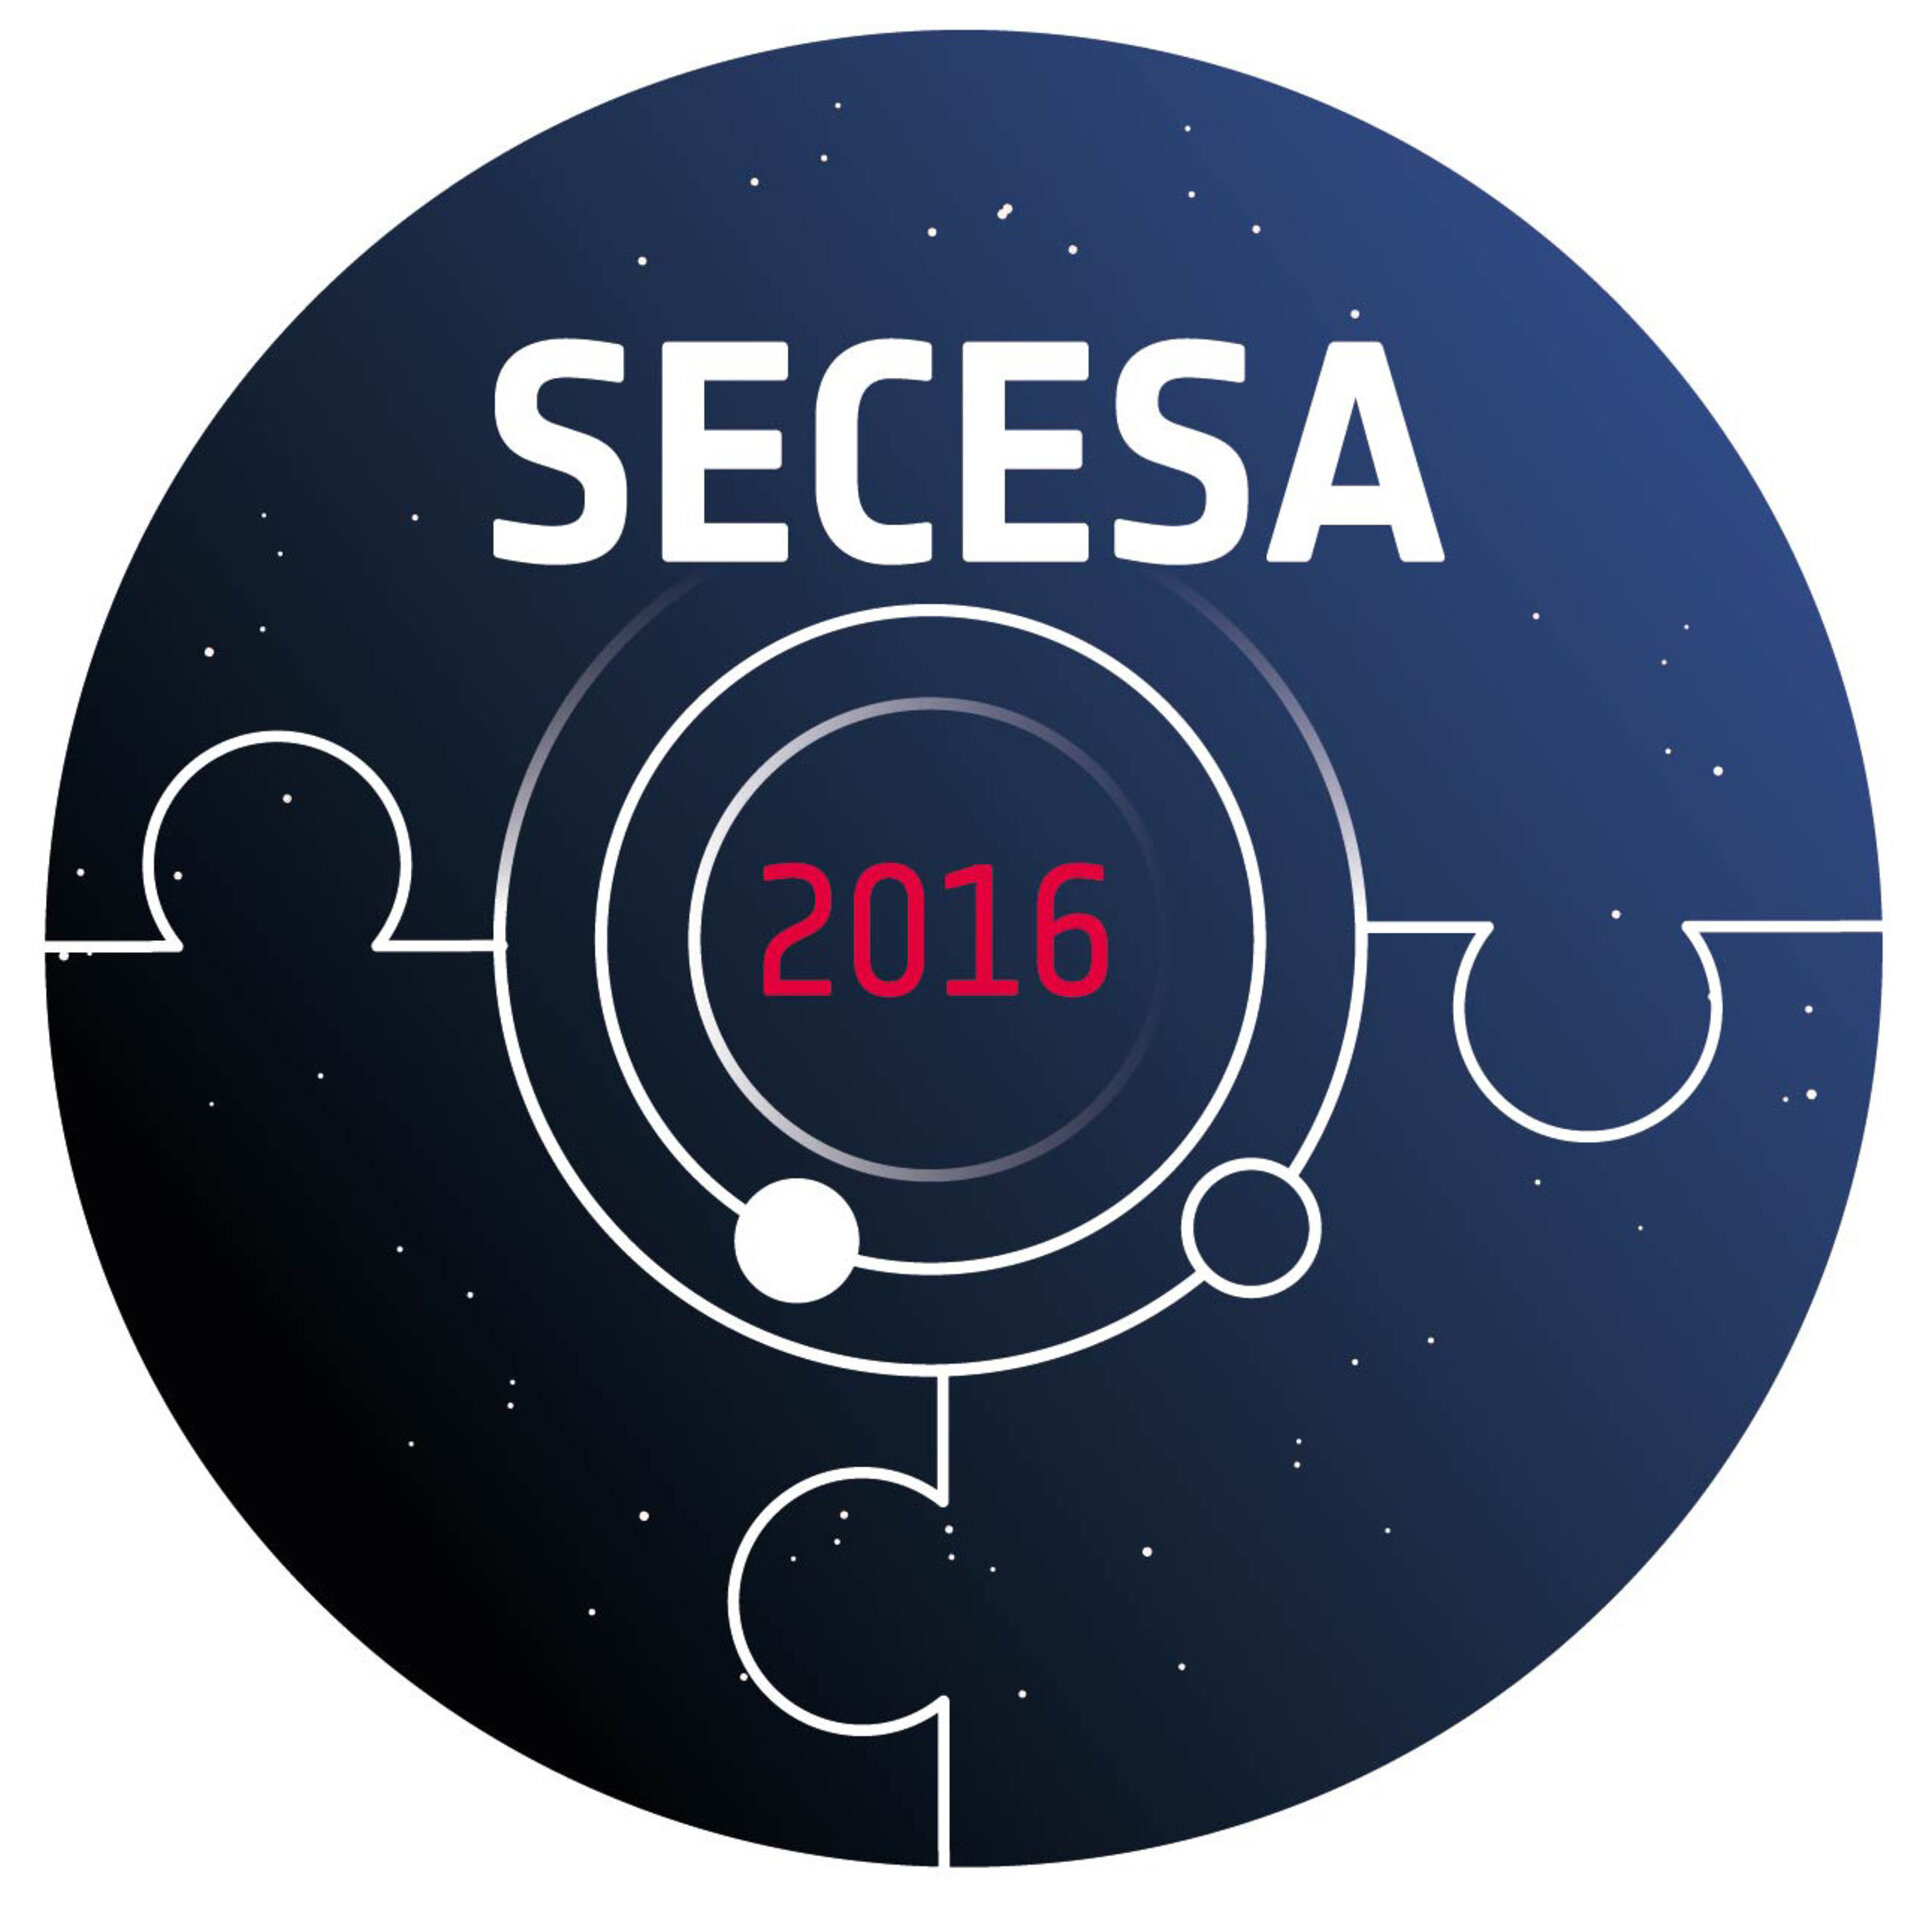 SECESA 2016 LOGO